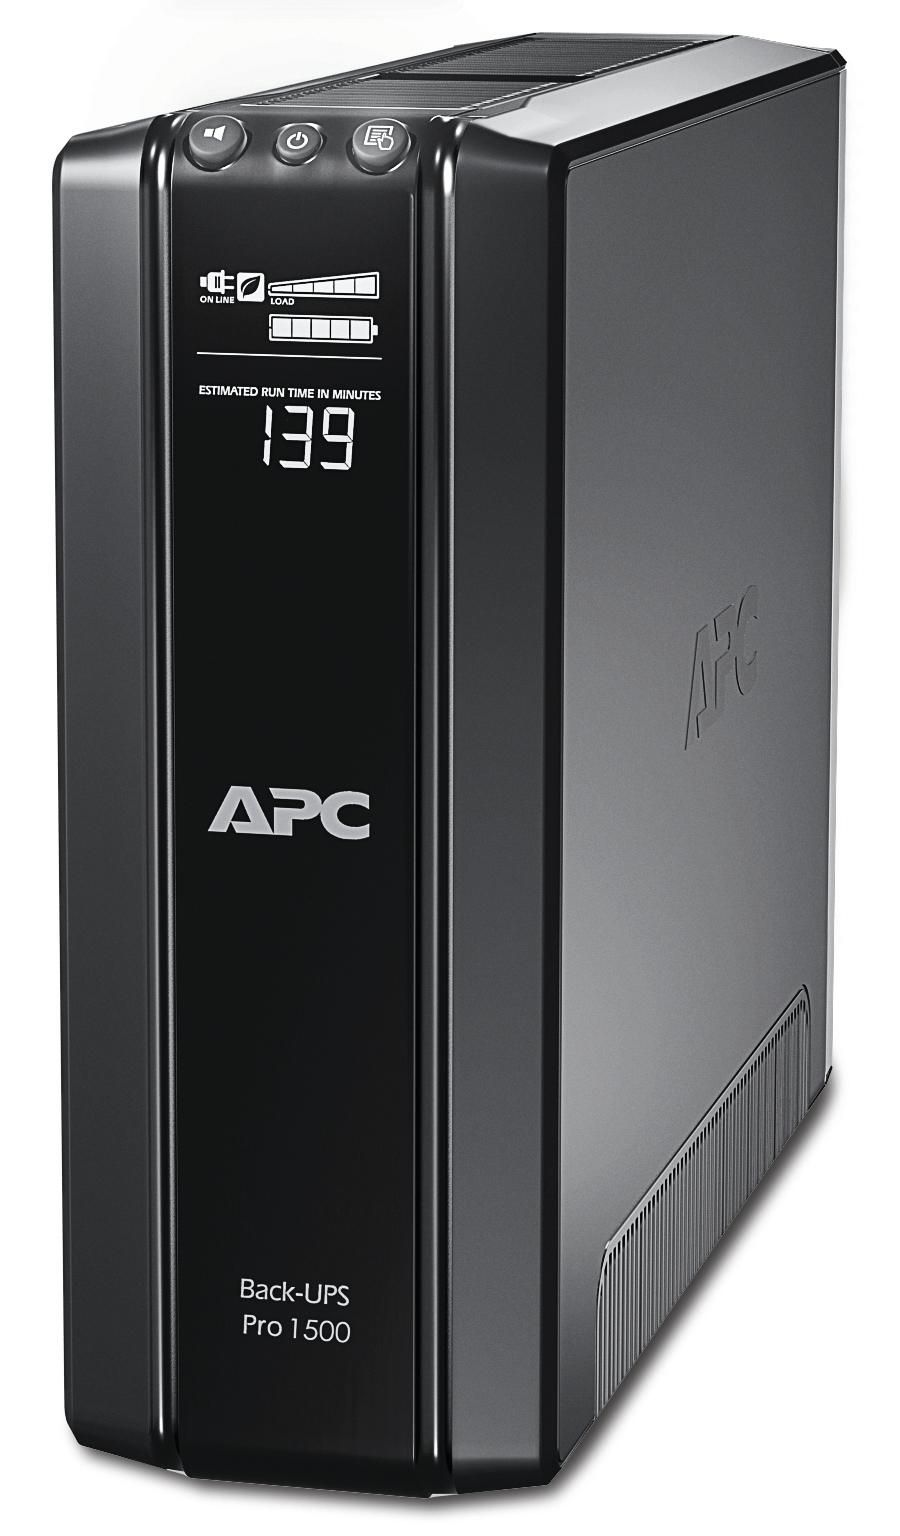 APC BR1500GI Power Saving Back-UPS Pro 1500 